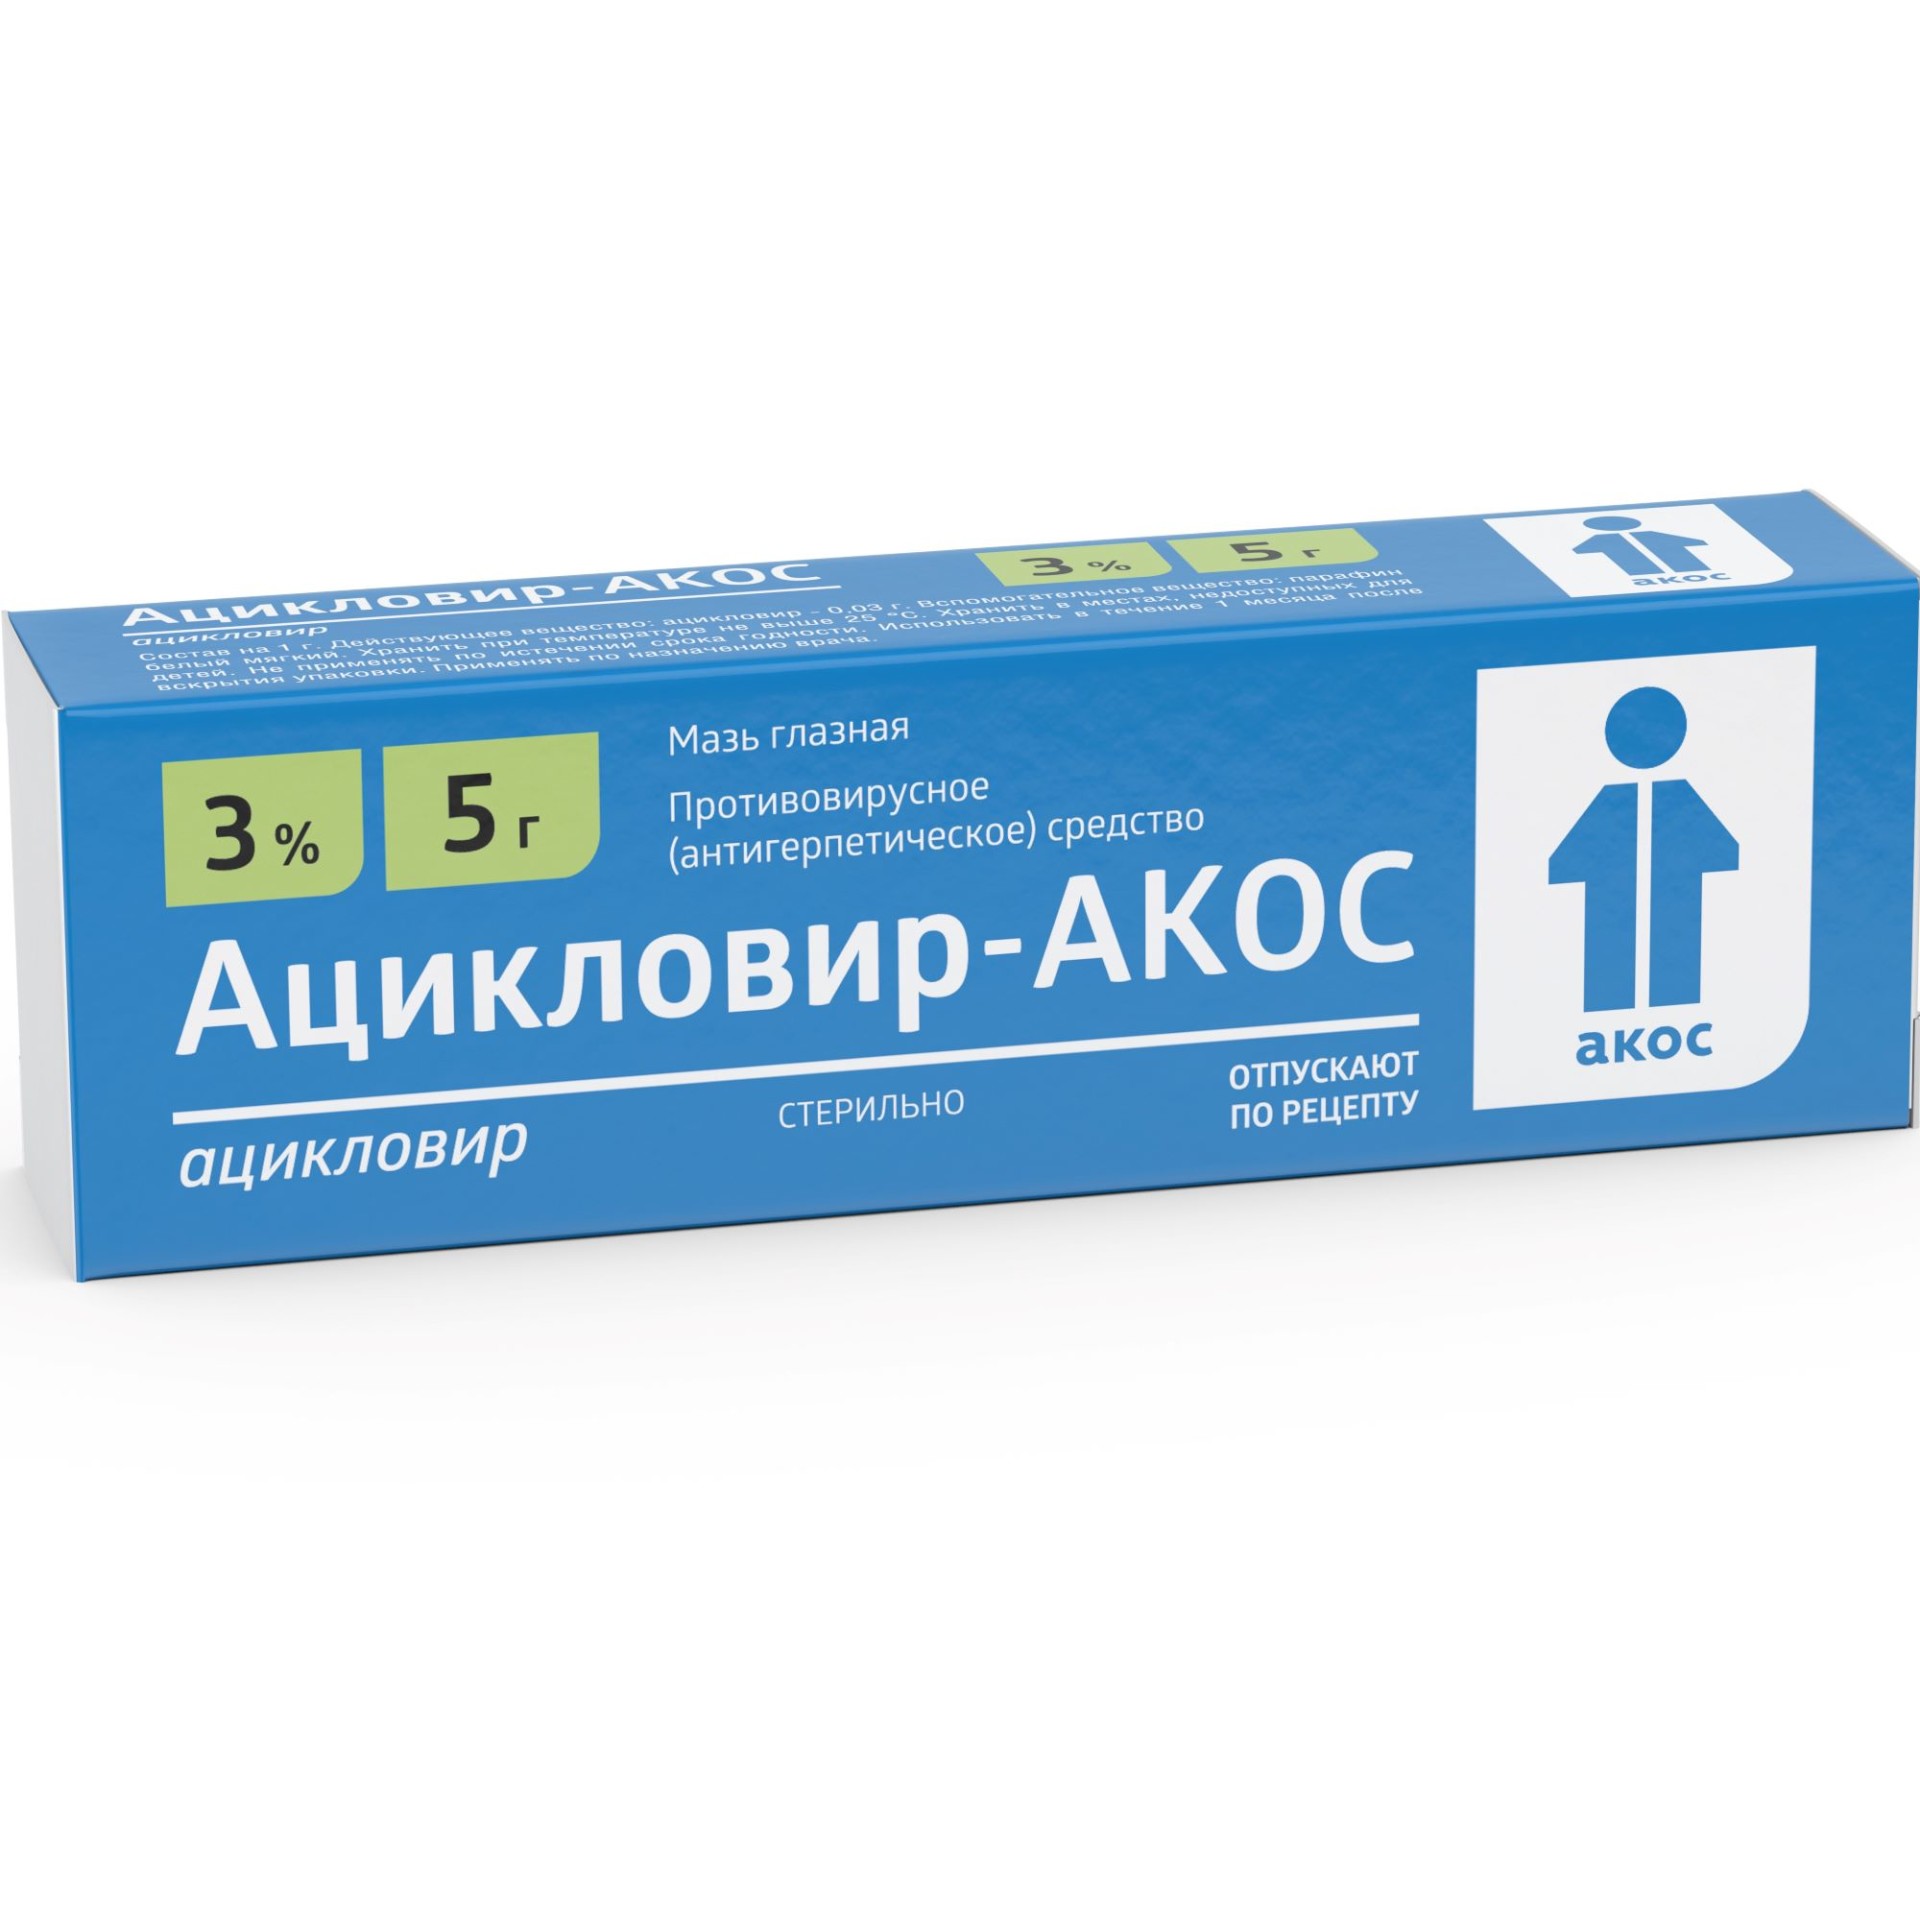 Мазь и таблетки Ацикловир - подробная инструкция по 